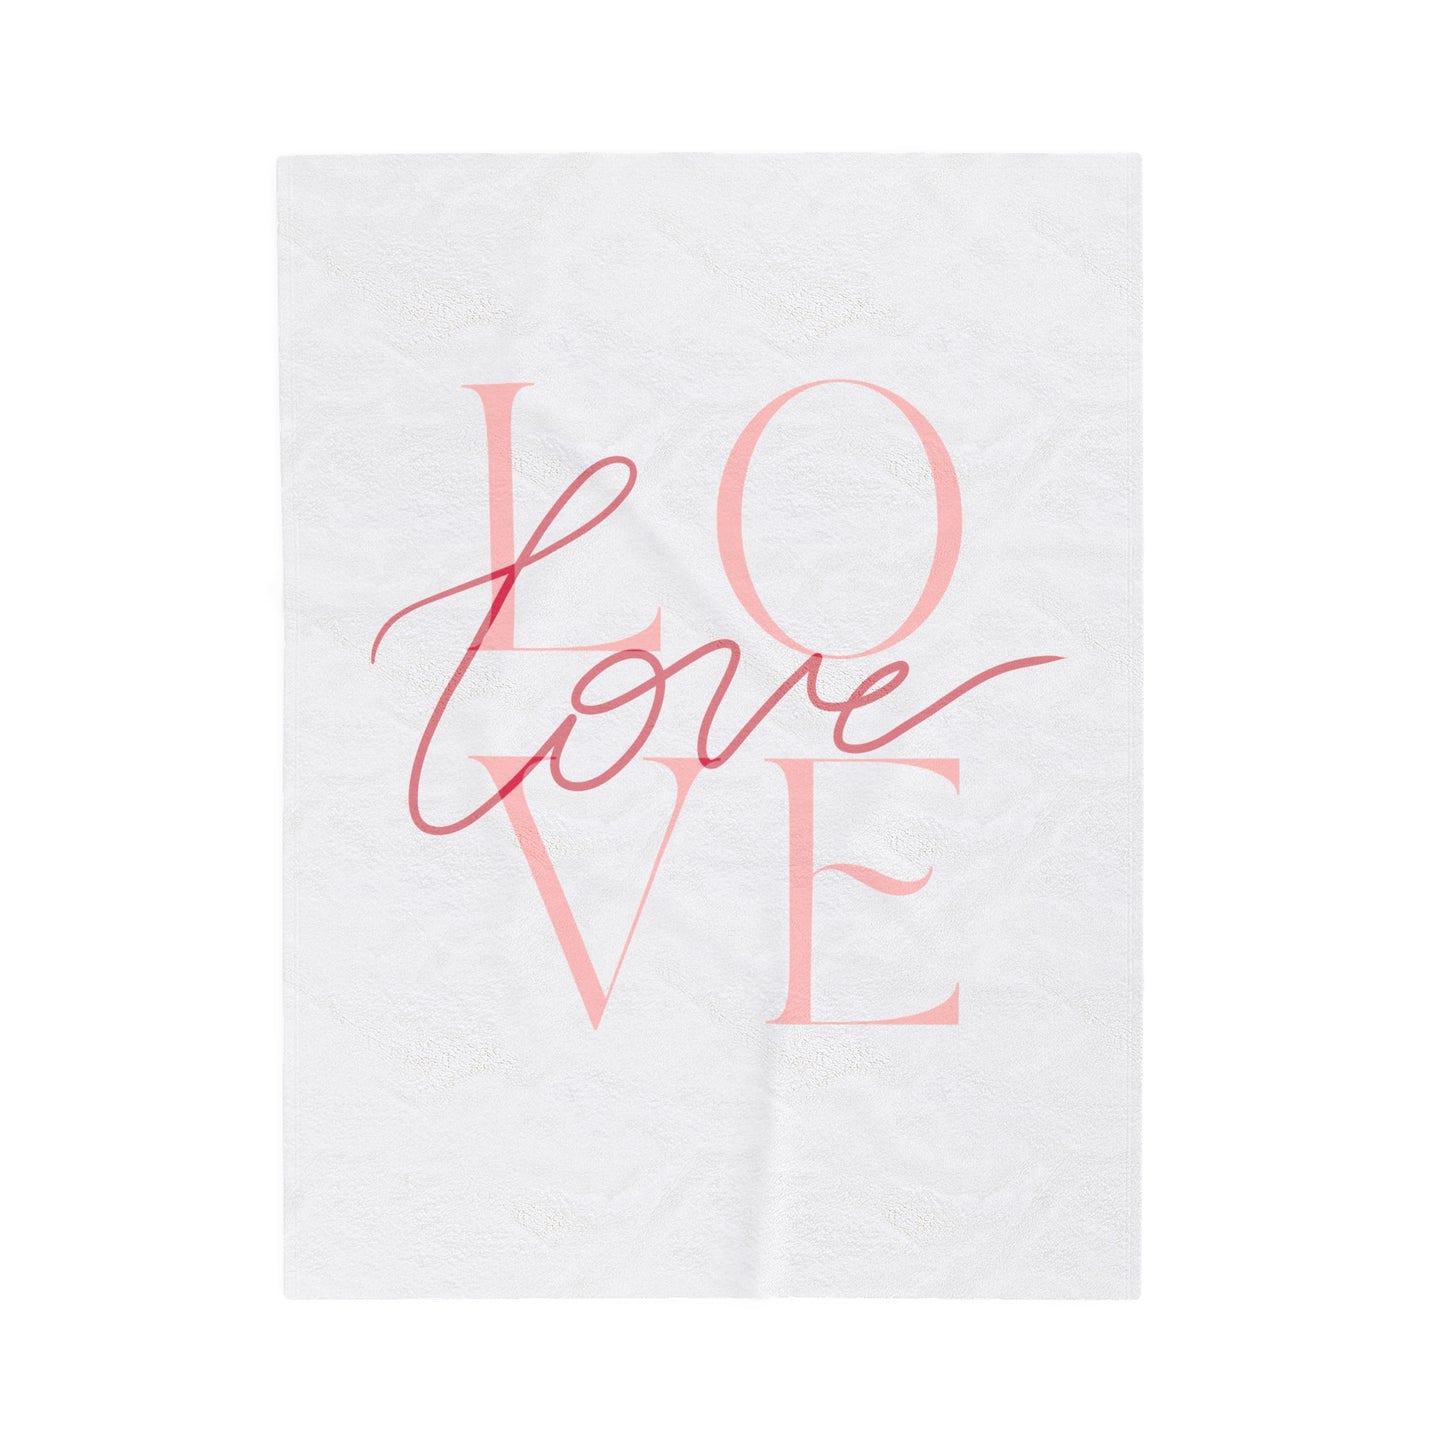 Love Printed Velveteen Plush Blanket for Valentine